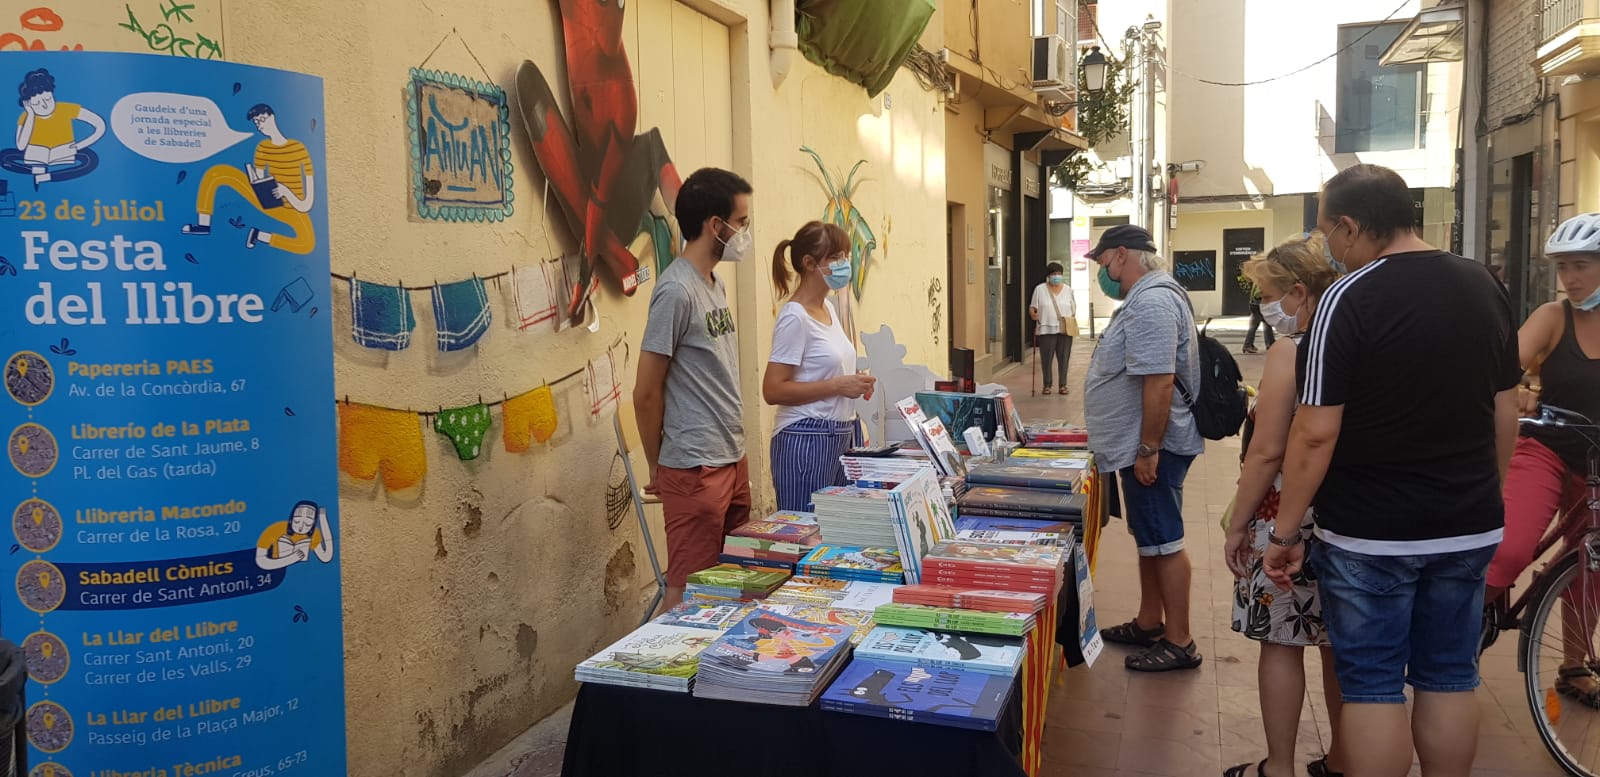 Sabadell Còmics també ha sortit al carrer per celebrar la jornada 